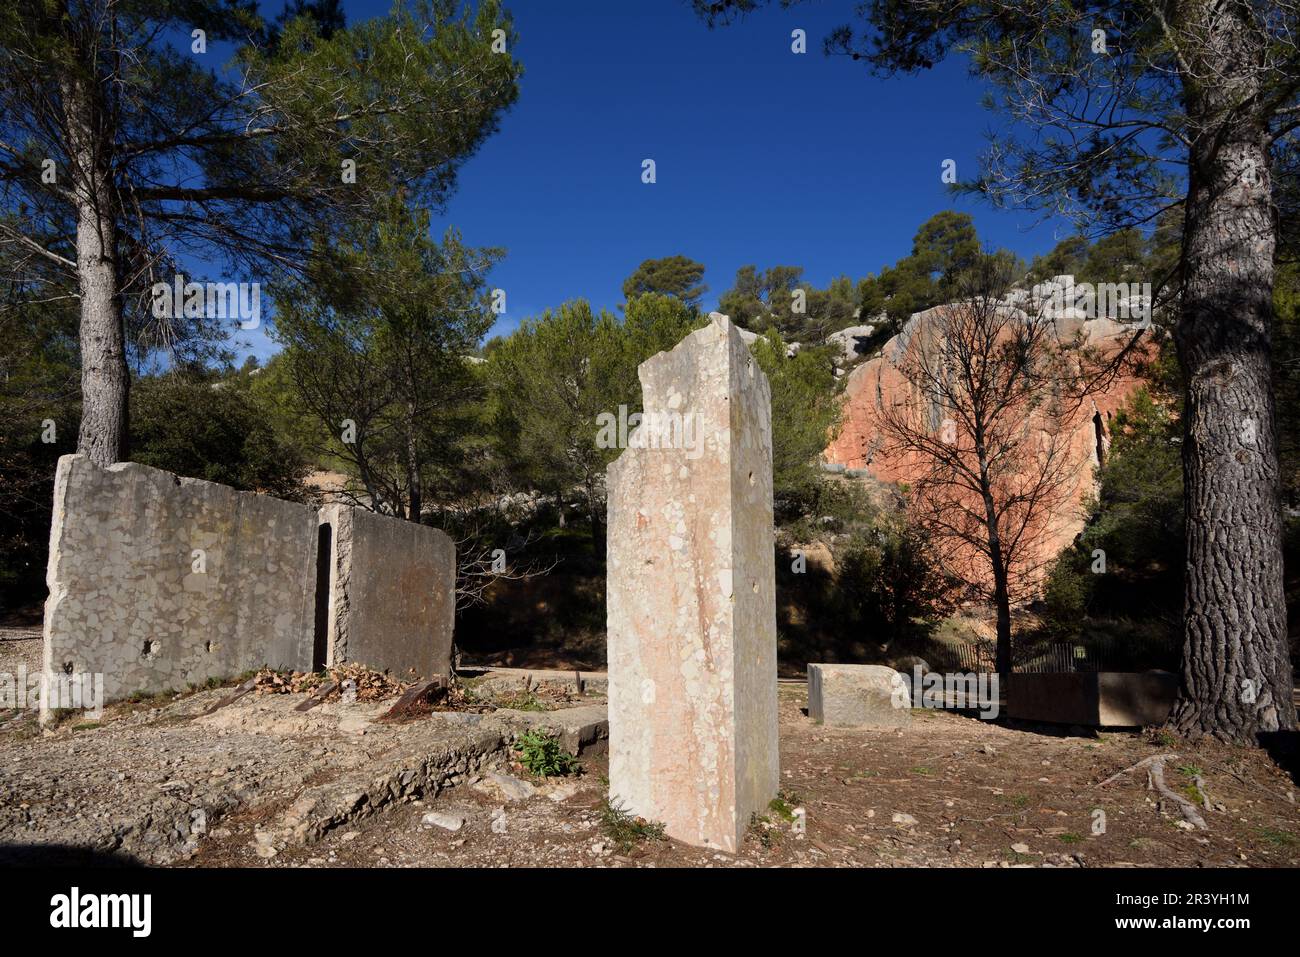 Carrière de marbre abandonnée avec bloc de marbre coupé ou roche à Vallon du Marbre, ou Vallée de marbre, montagne Sainte-victoire Provence France Banque D'Images